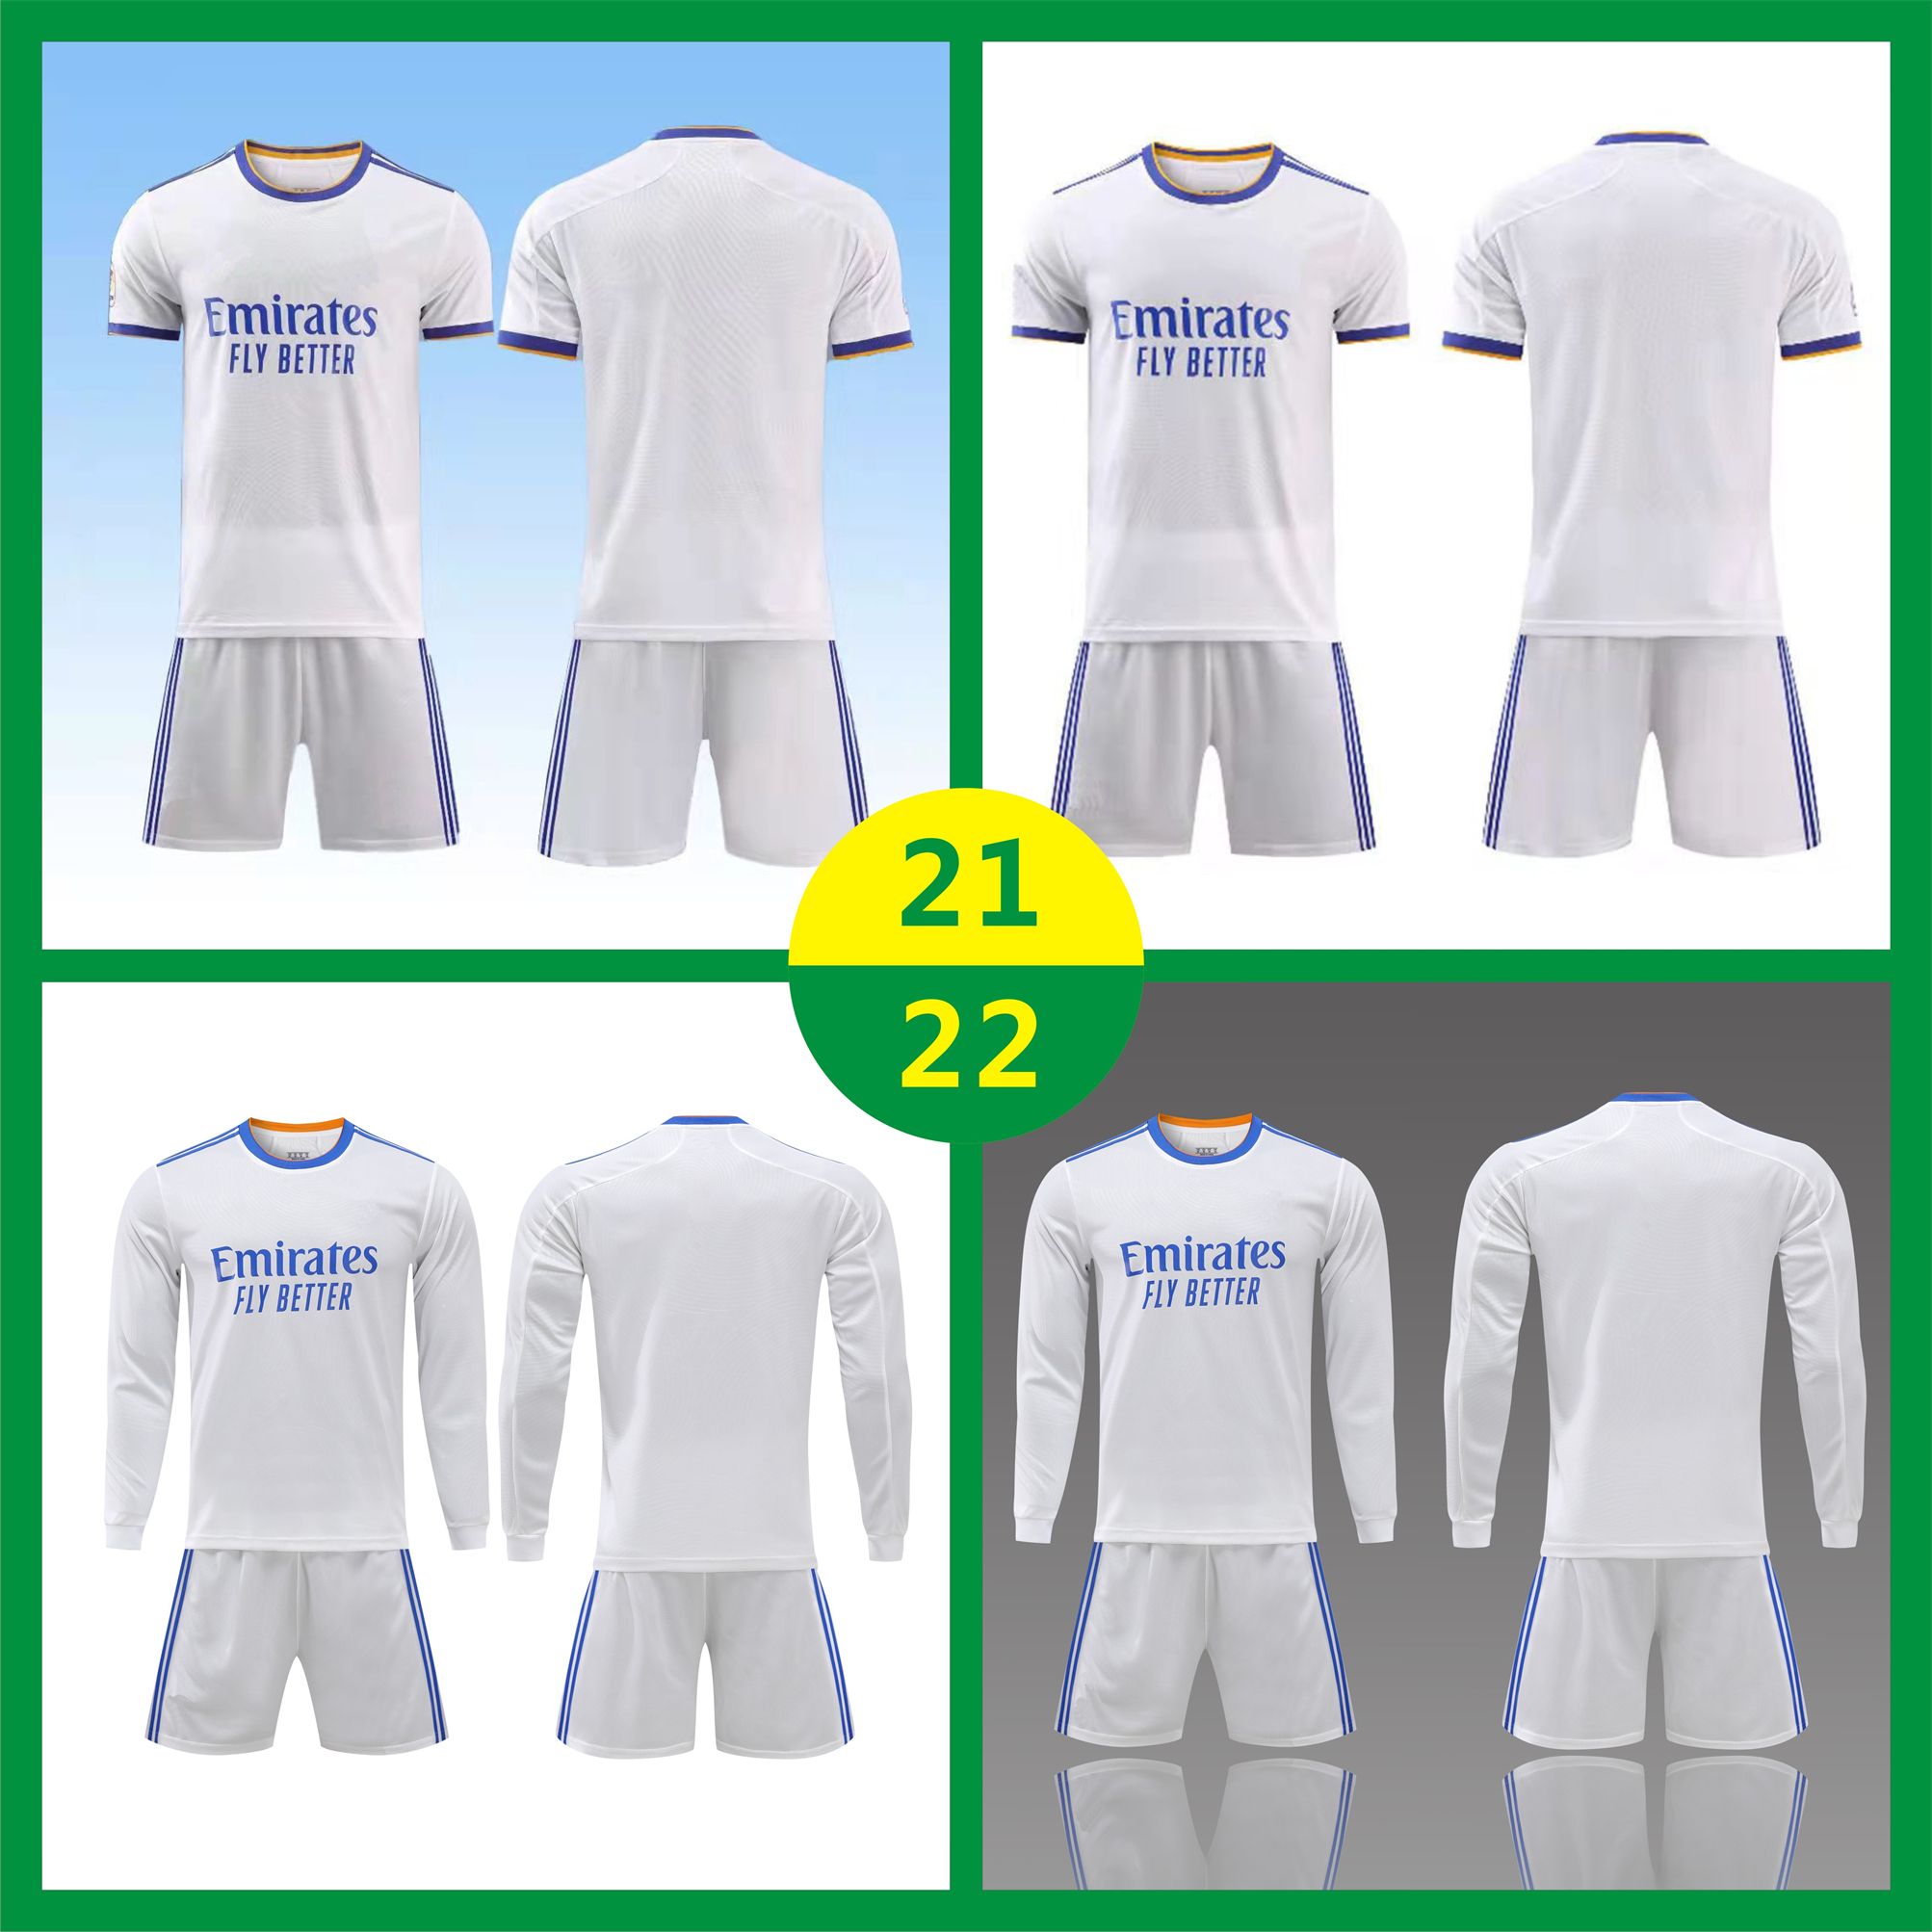 EE.UU. FAST 21 22 Home Jersey Soccer Wear Adulto largo traje de manga corta traje de entrenamiento 2021 para hombre niños blanco ropa deportiva camisetas de fútbol uniformes 2022 con logo # hmz-21A1